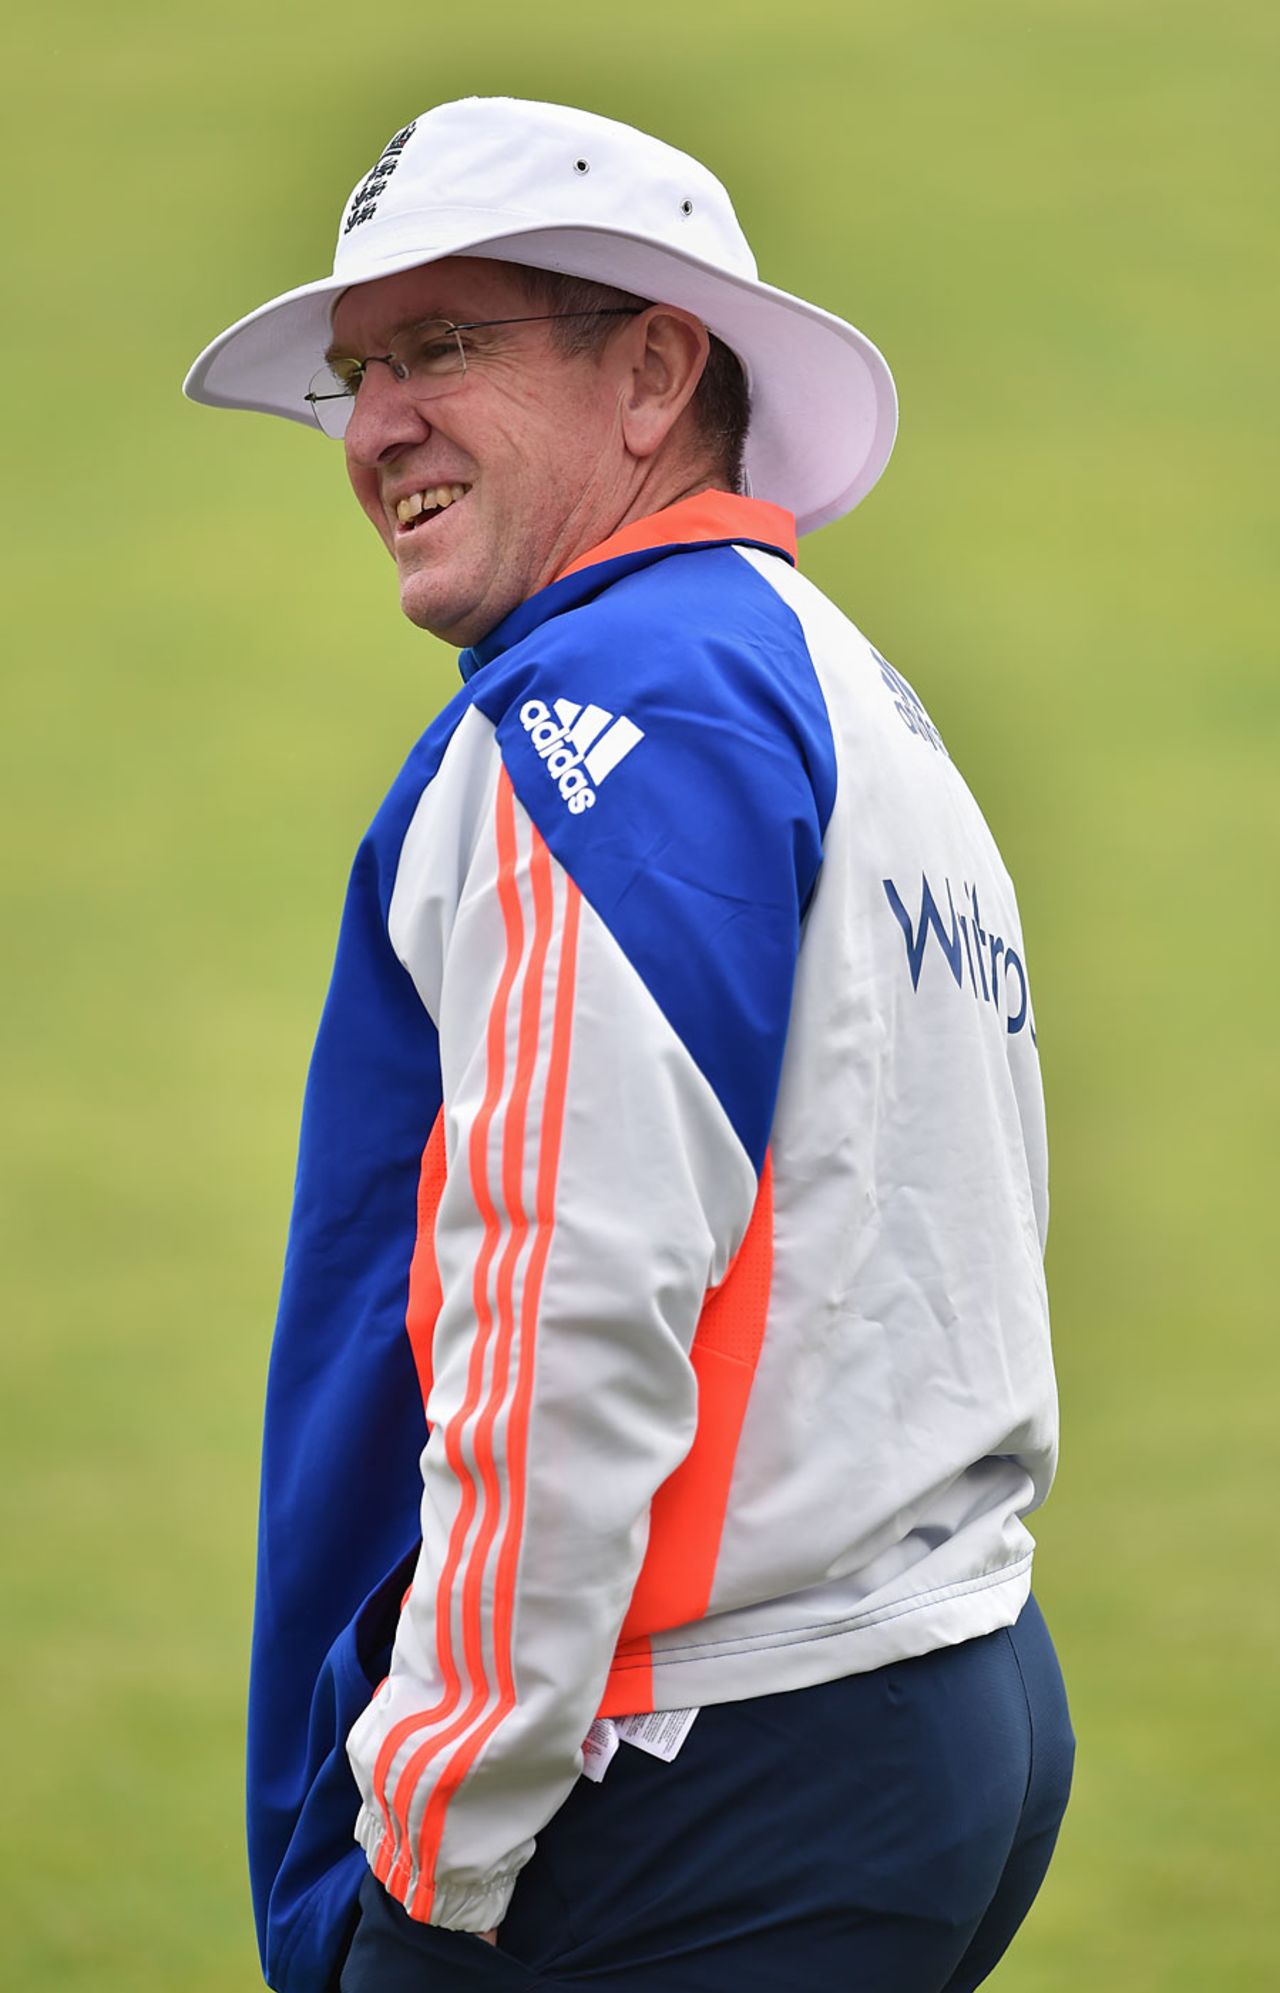 Trevor Bayliss led England's training session, Cardiff, July 6, 2015